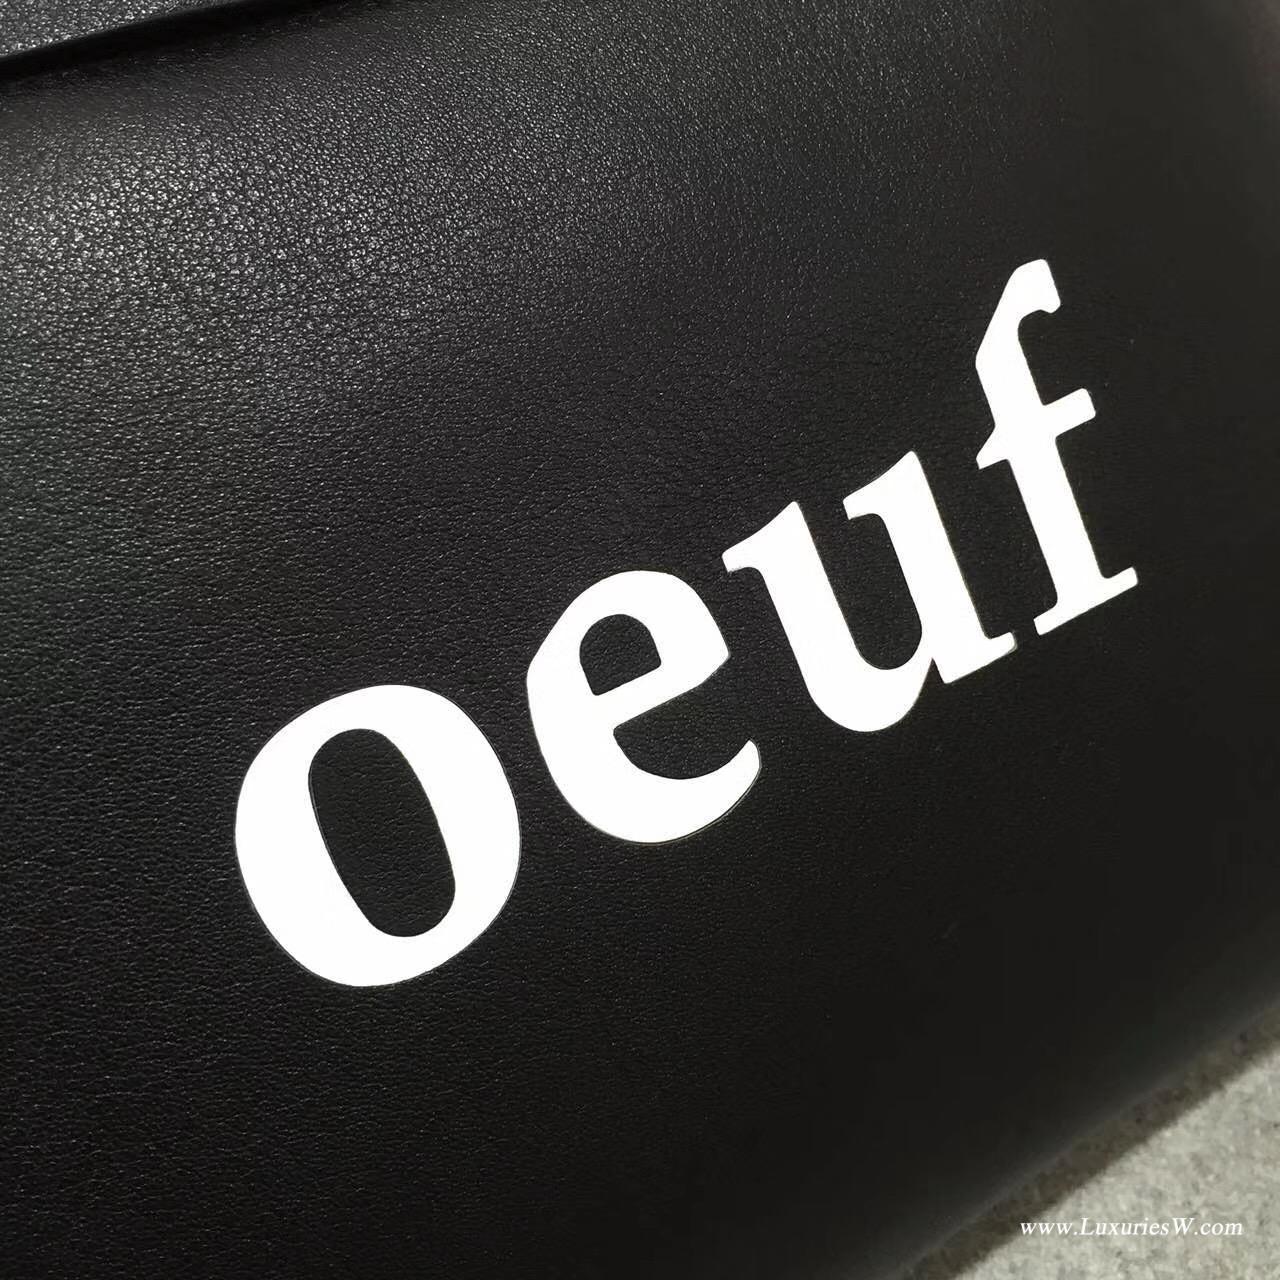 羅意威女包 Loewe T Pouch oeuf 系列手拿包 采用柔軟黑色 小牛皮